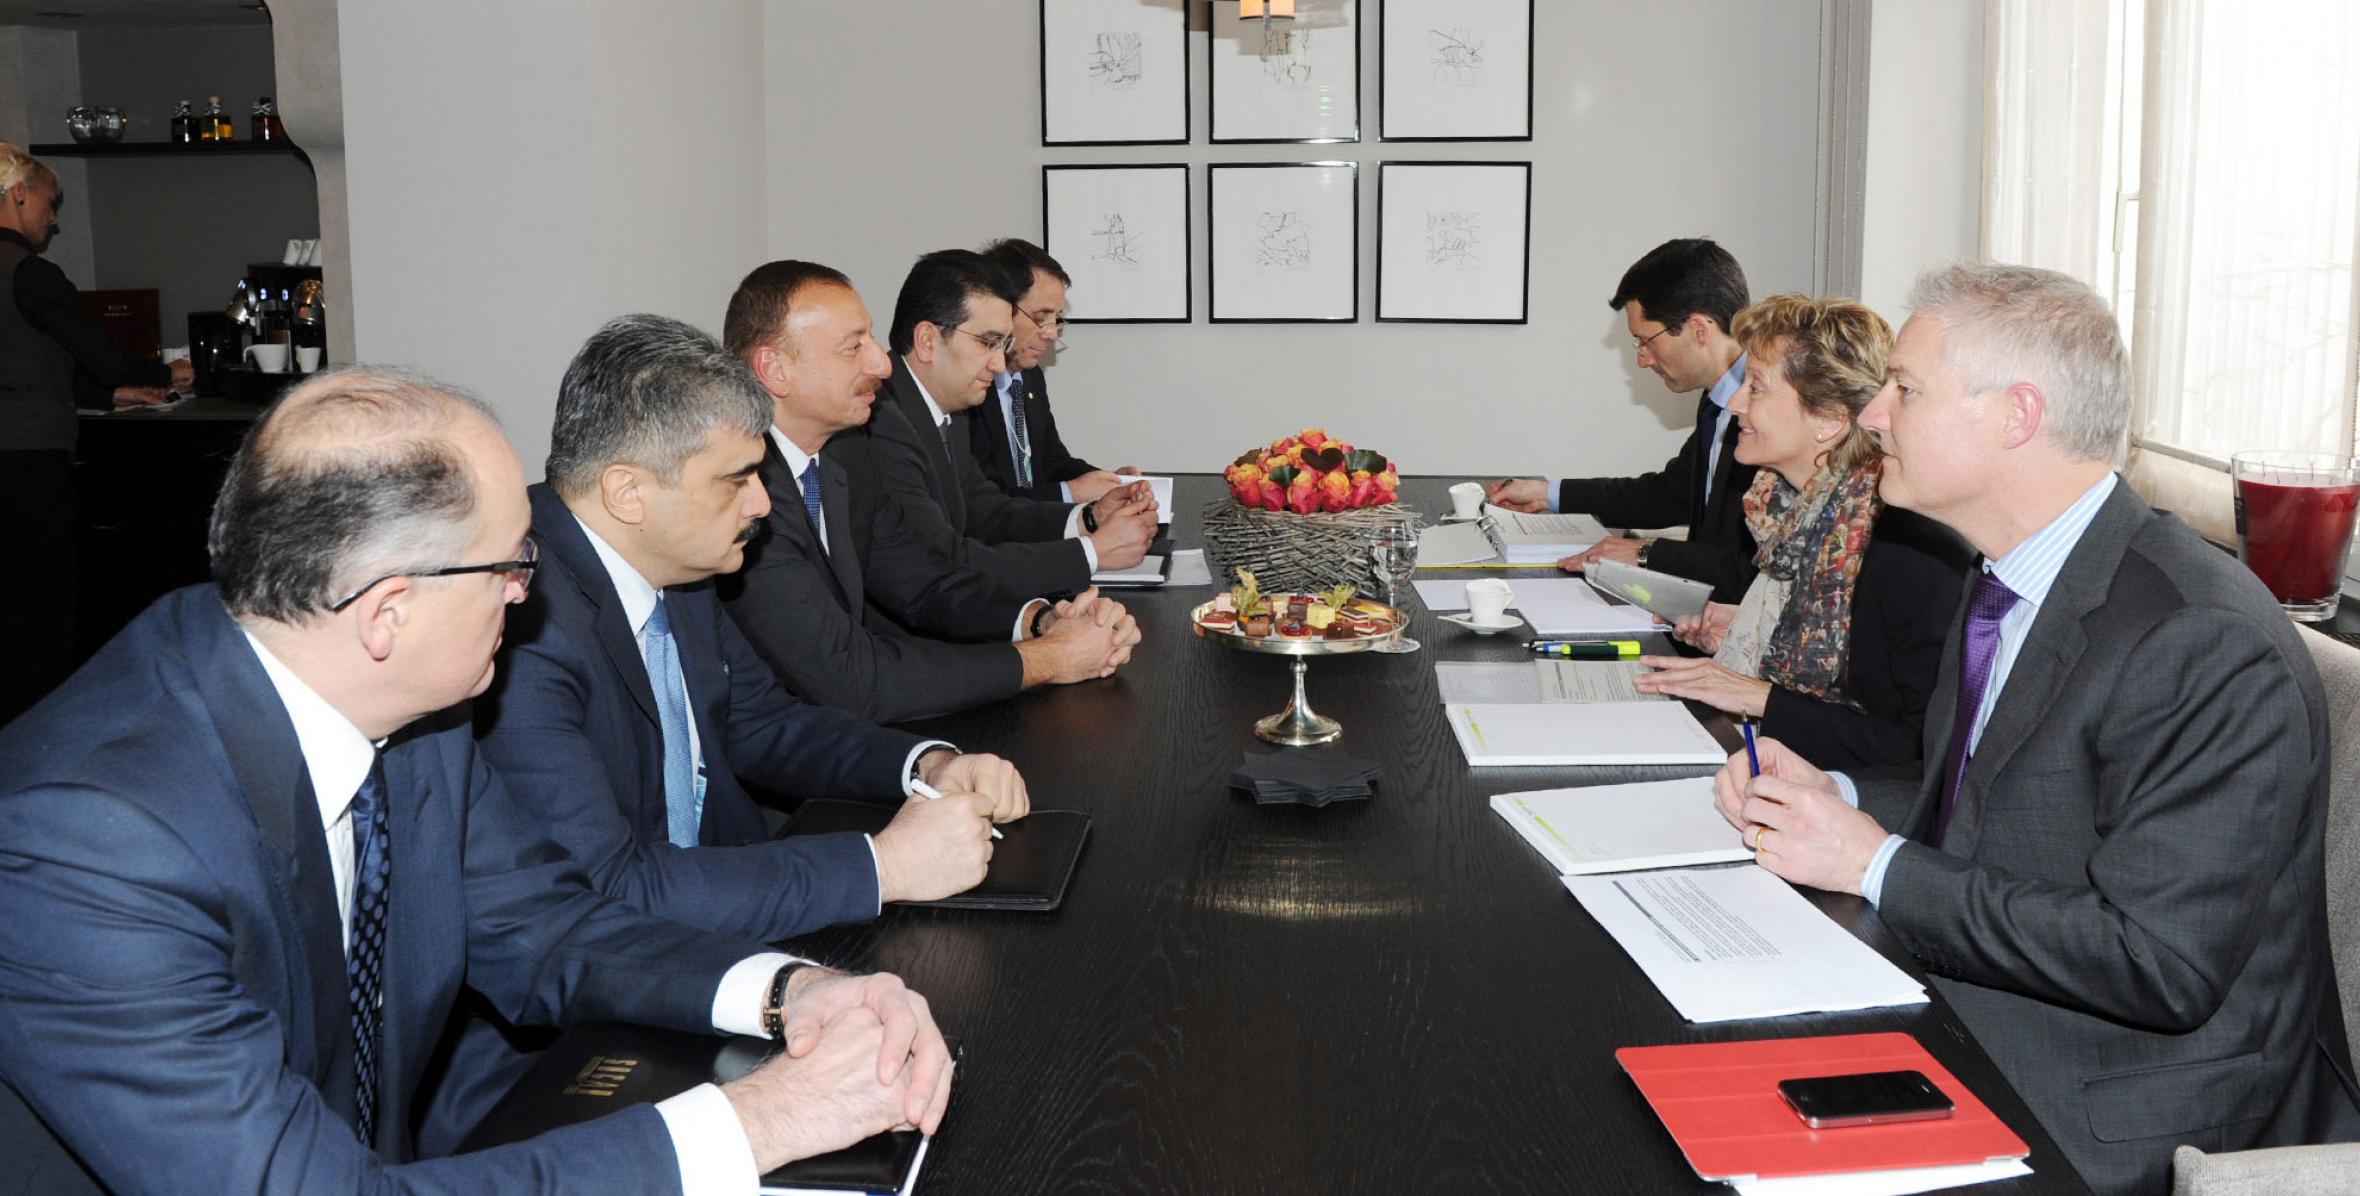 Ilham Aliyev met with Swiss President Eveline Widmer-Schlumpf